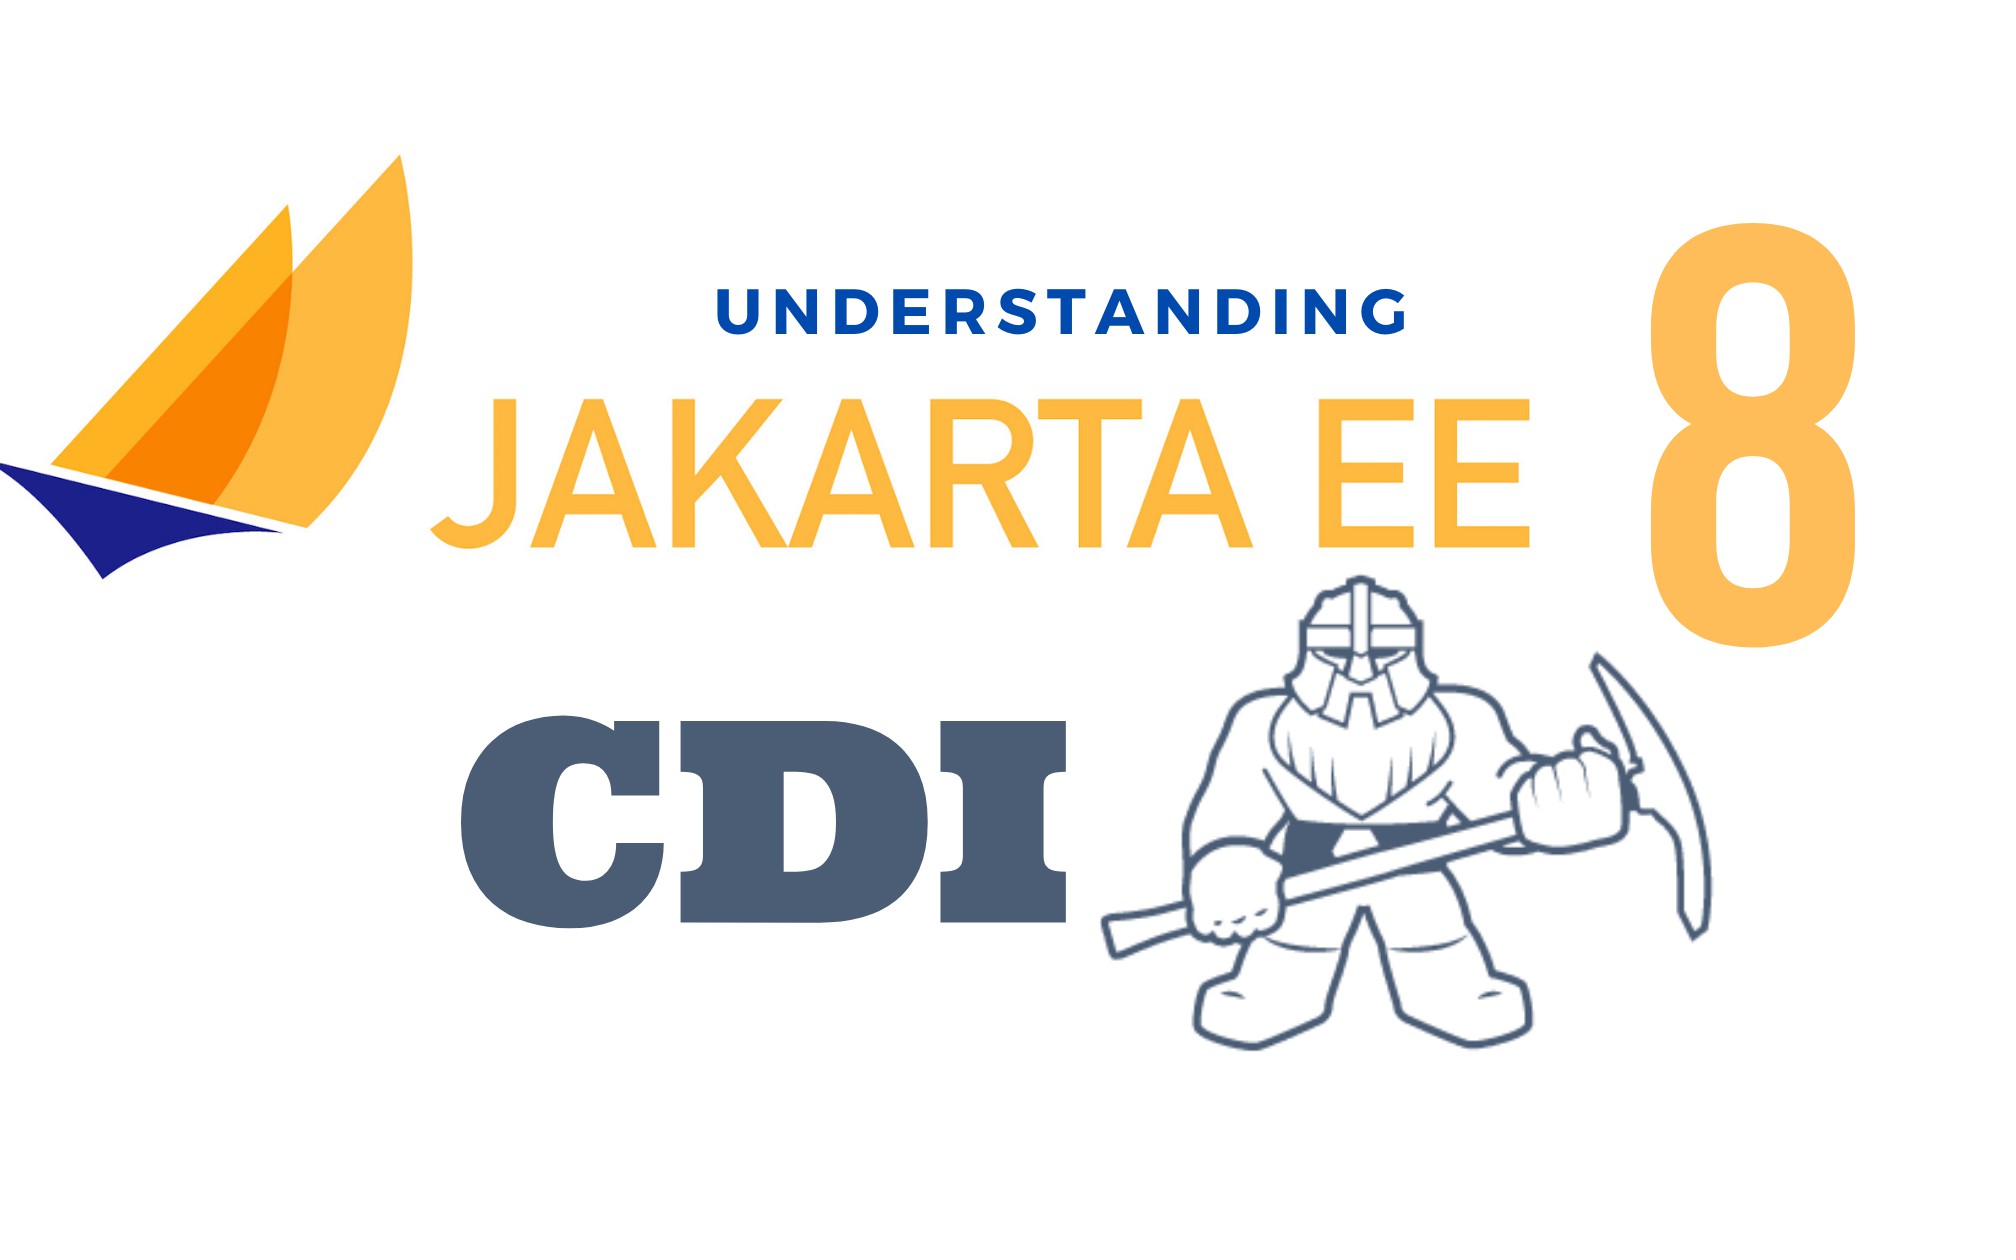 Understanding Jakarta EE 8 - CDI